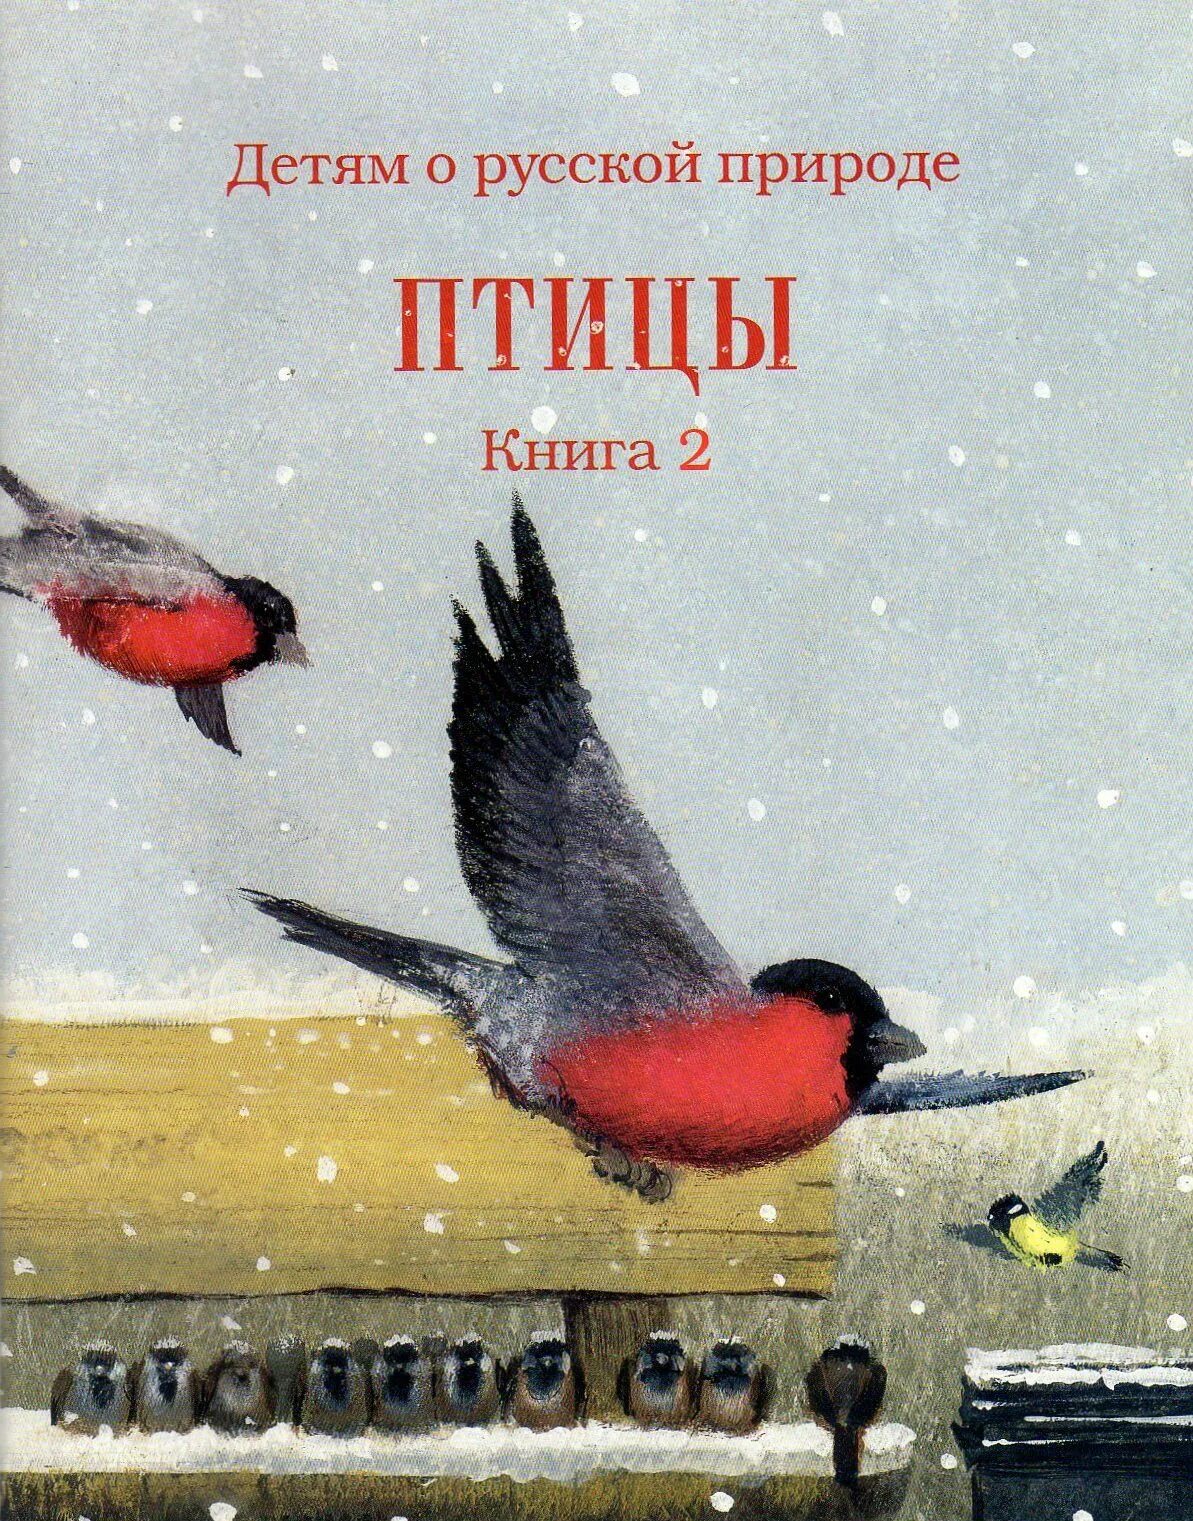 Rybub j gnbwf[ lkz ltntq. Книги о птицах для детей. Книги о птицах Художественные. Книги о птицах для детей Художественные.